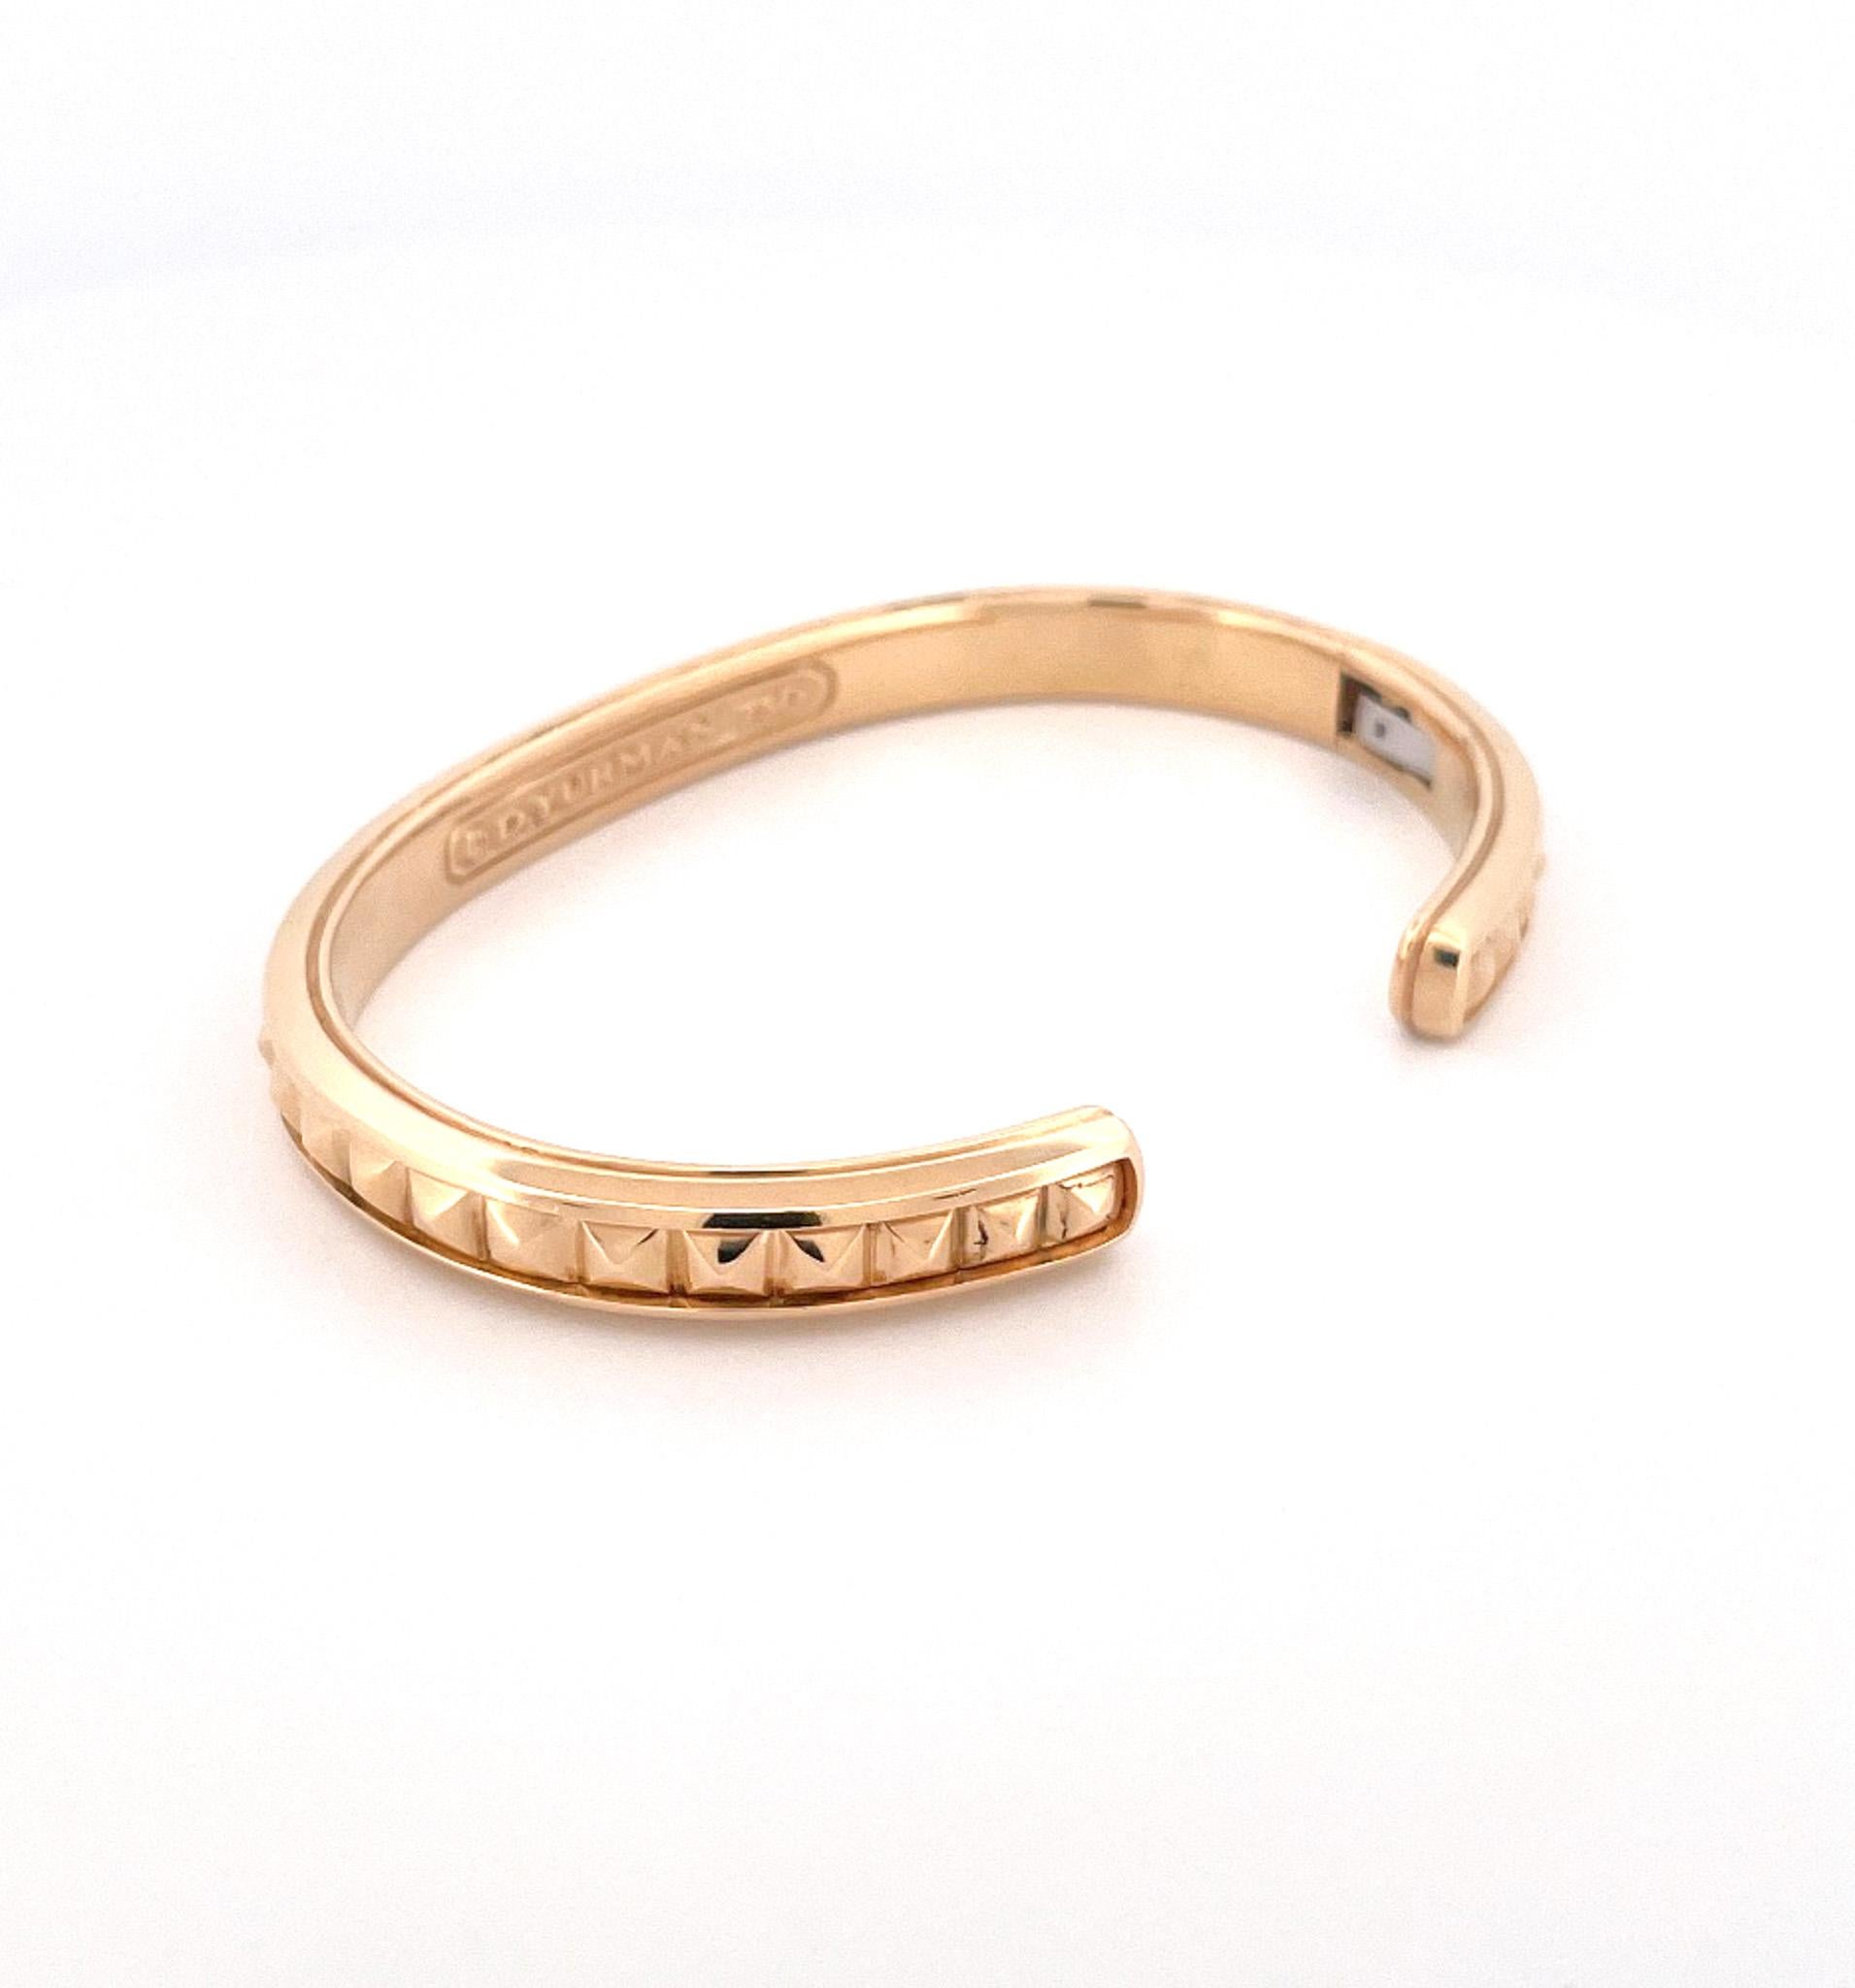 Manschettenarmband aus 18 Karat Gelbgold für Herren des Designers David Yurman, ca. 1990er Jahre. Dieses Armband ist mit einem geriffelten Design entlang der mittleren Reihe gefertigt. Dieses Armband ist ein kleines Herrenarmband mit einer Größe von